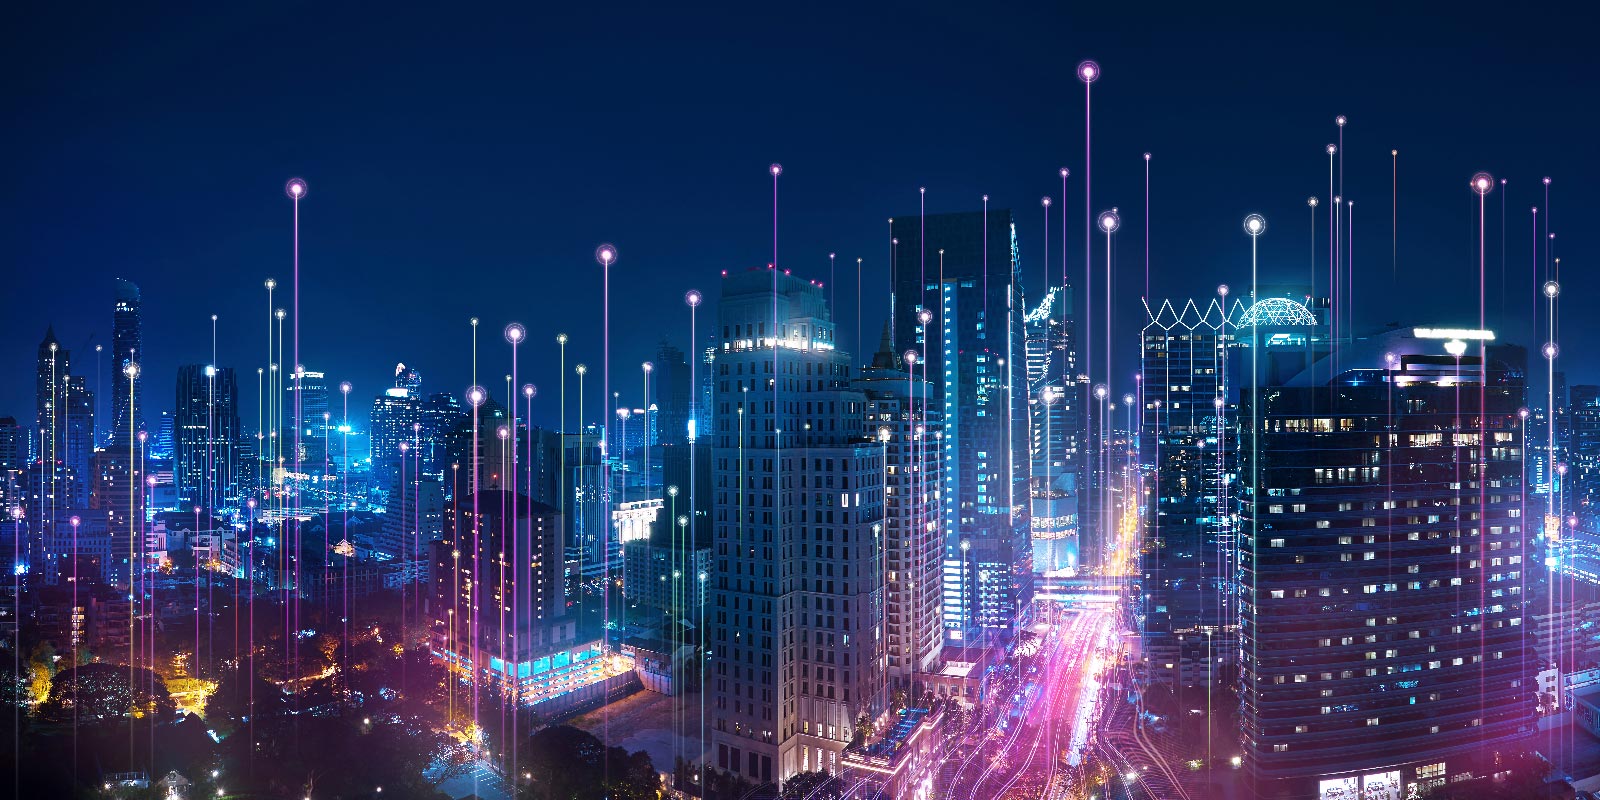 vista aérea del paisaje urbano por la noche con líneas digitales azules y moradas, que muestran la conexión superpuesta en la ciudad